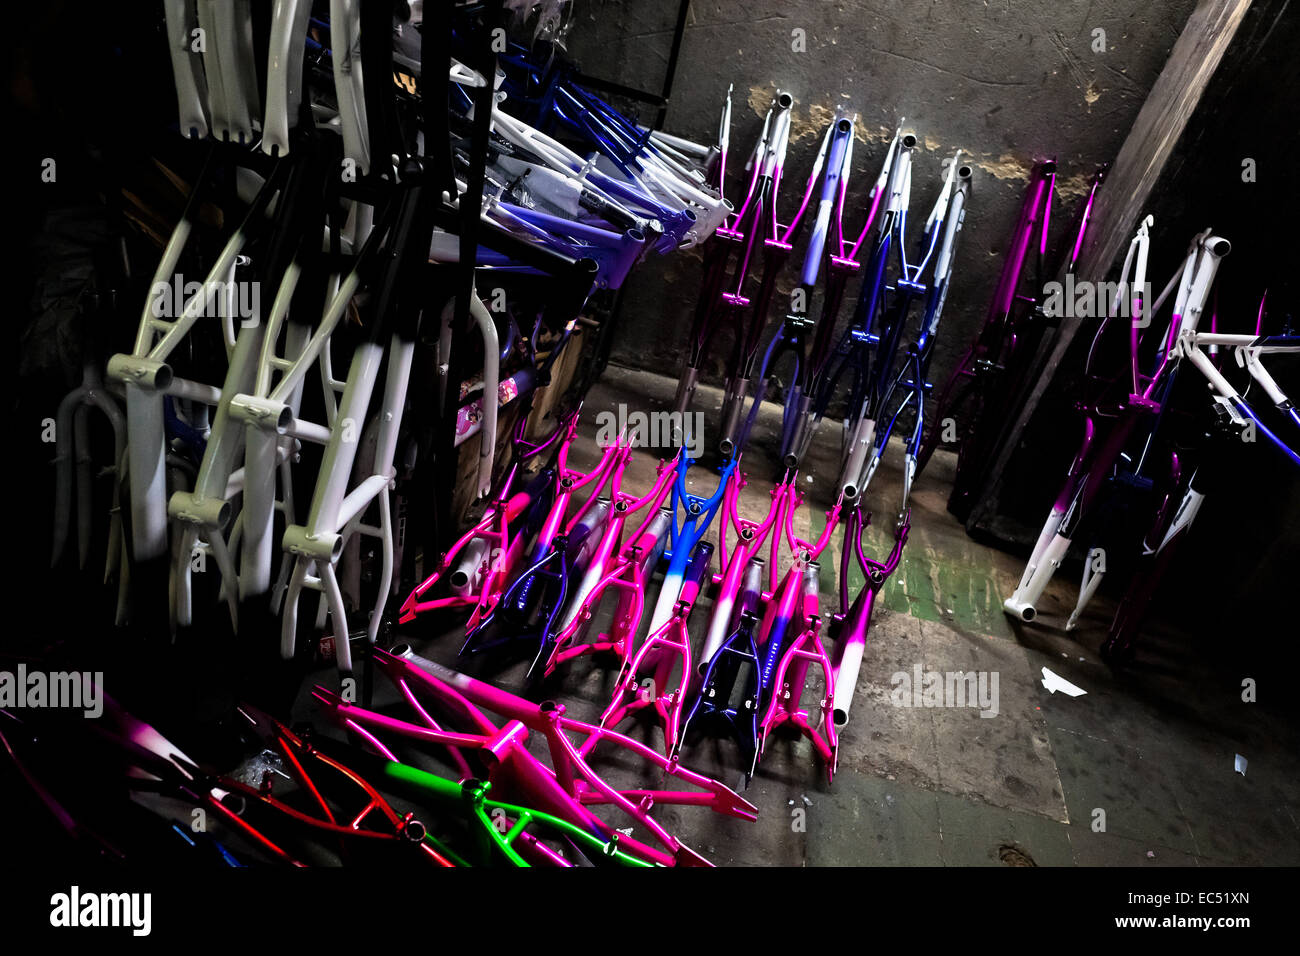 Pintado y curado marcos de bicicleta son vistos en el piso de una pequeña  fábrica de bicicletas en la ciudad de Bogotá, Colombia, 10 de abril de  2013. Debido a la fuerte